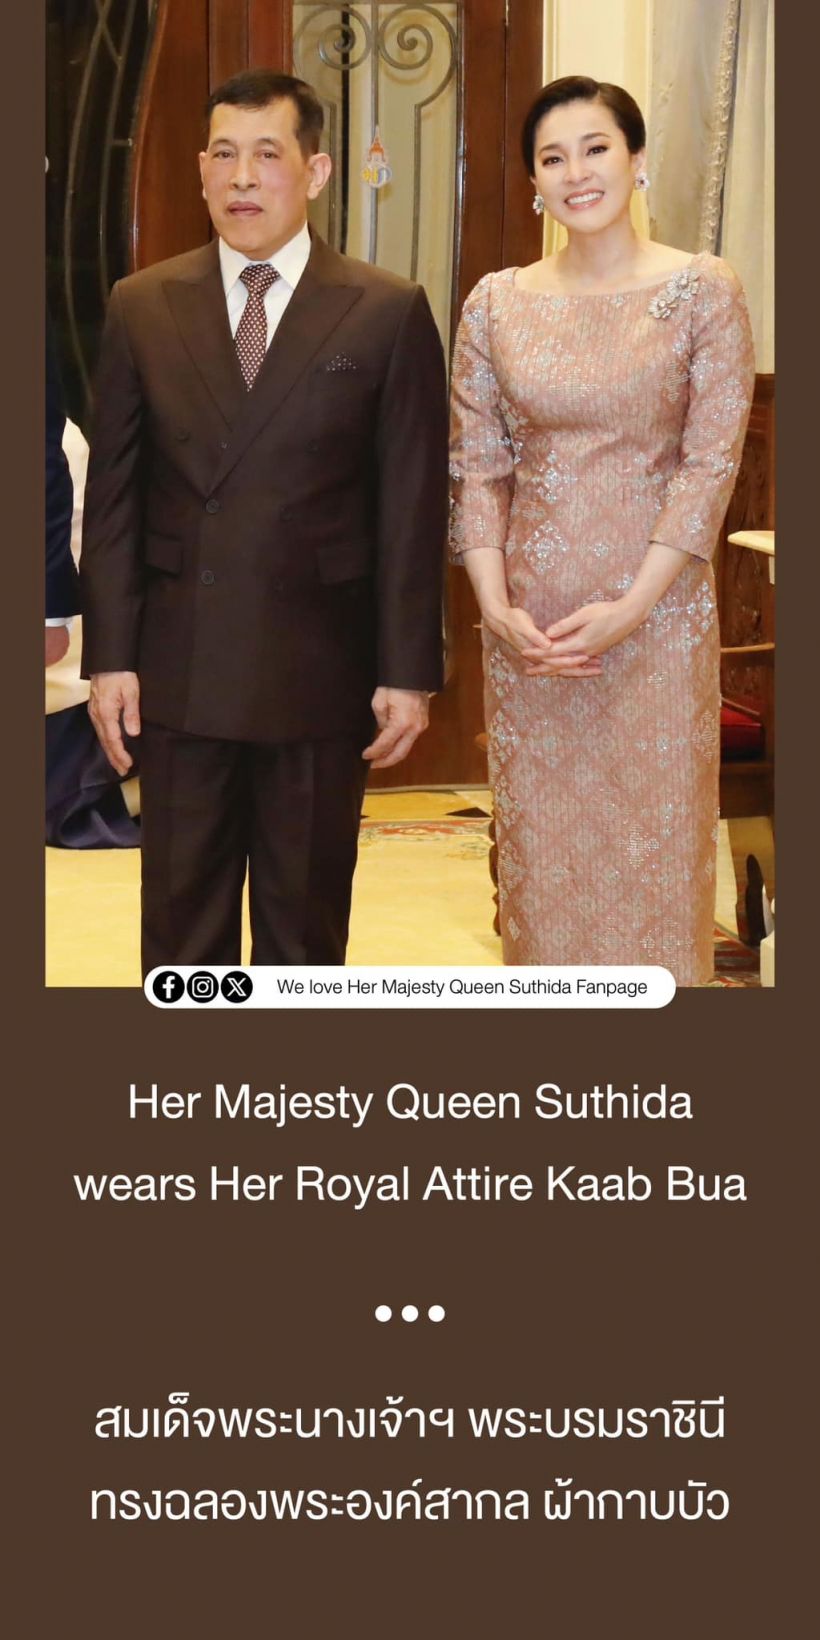 พระราชินีทรงฉลองพระองค์สากลผ้ากาบบัว ต้อนรับประธานาธิบดีเยอรมนีและภริยา